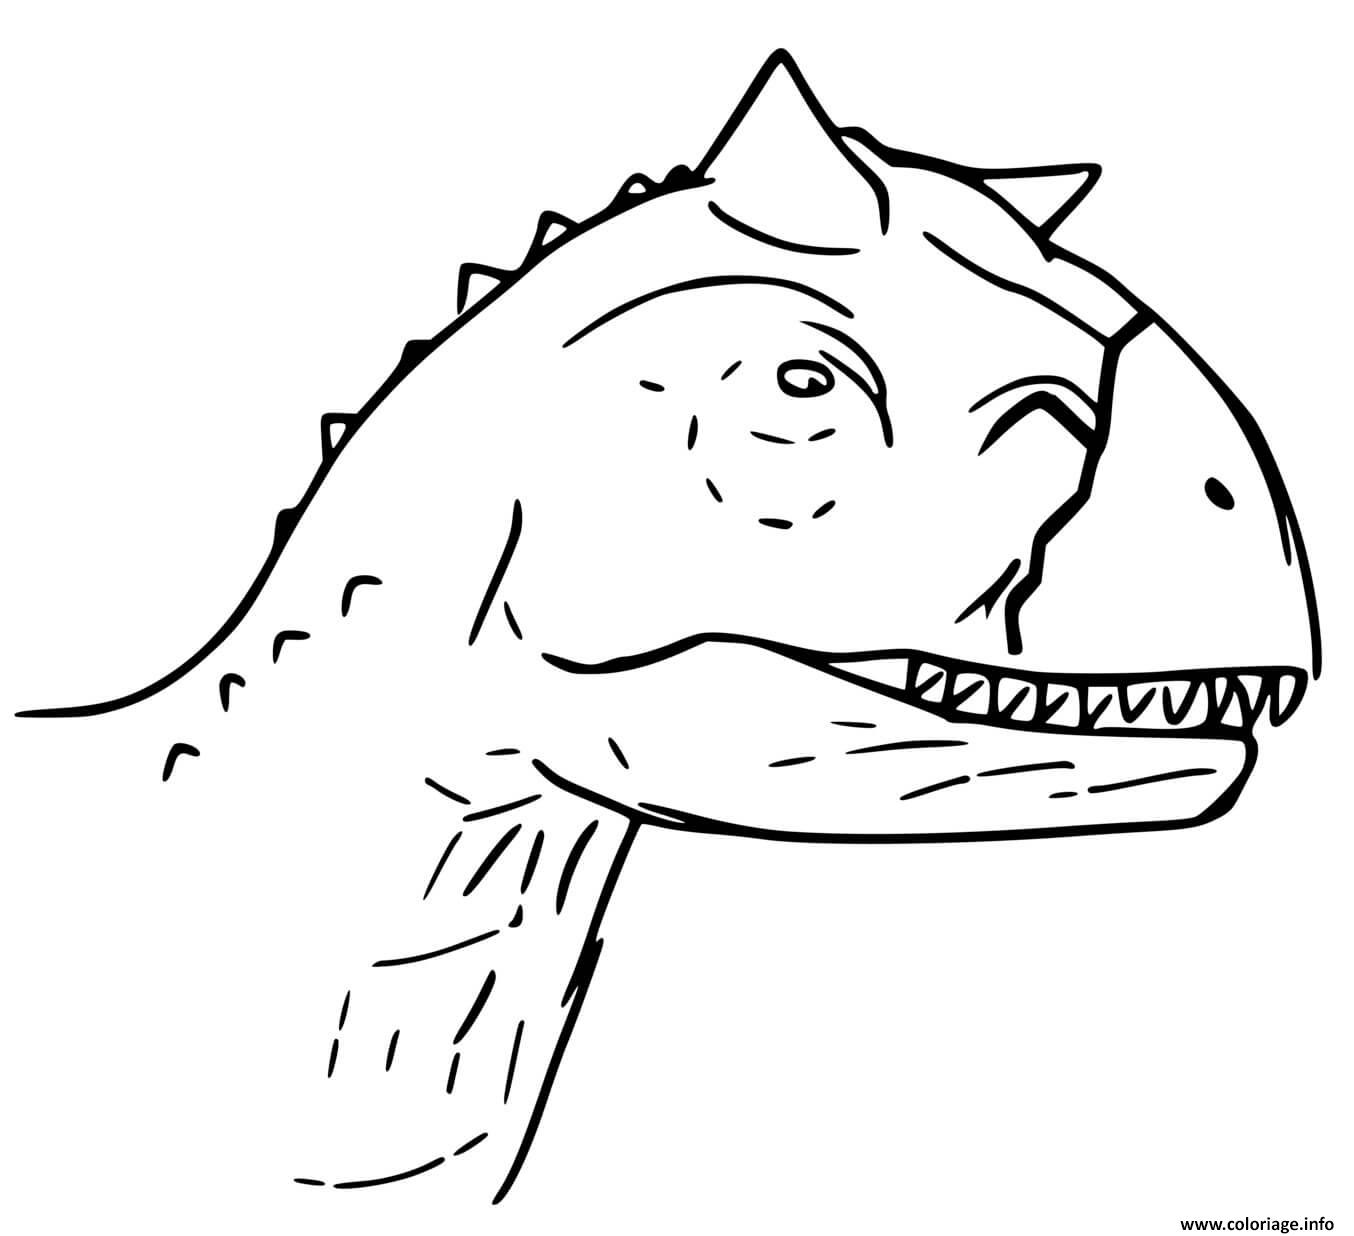 Coloriage Jurassic World La Colo Du Cretace Toro Carnotaurus Dessin à Imprimer